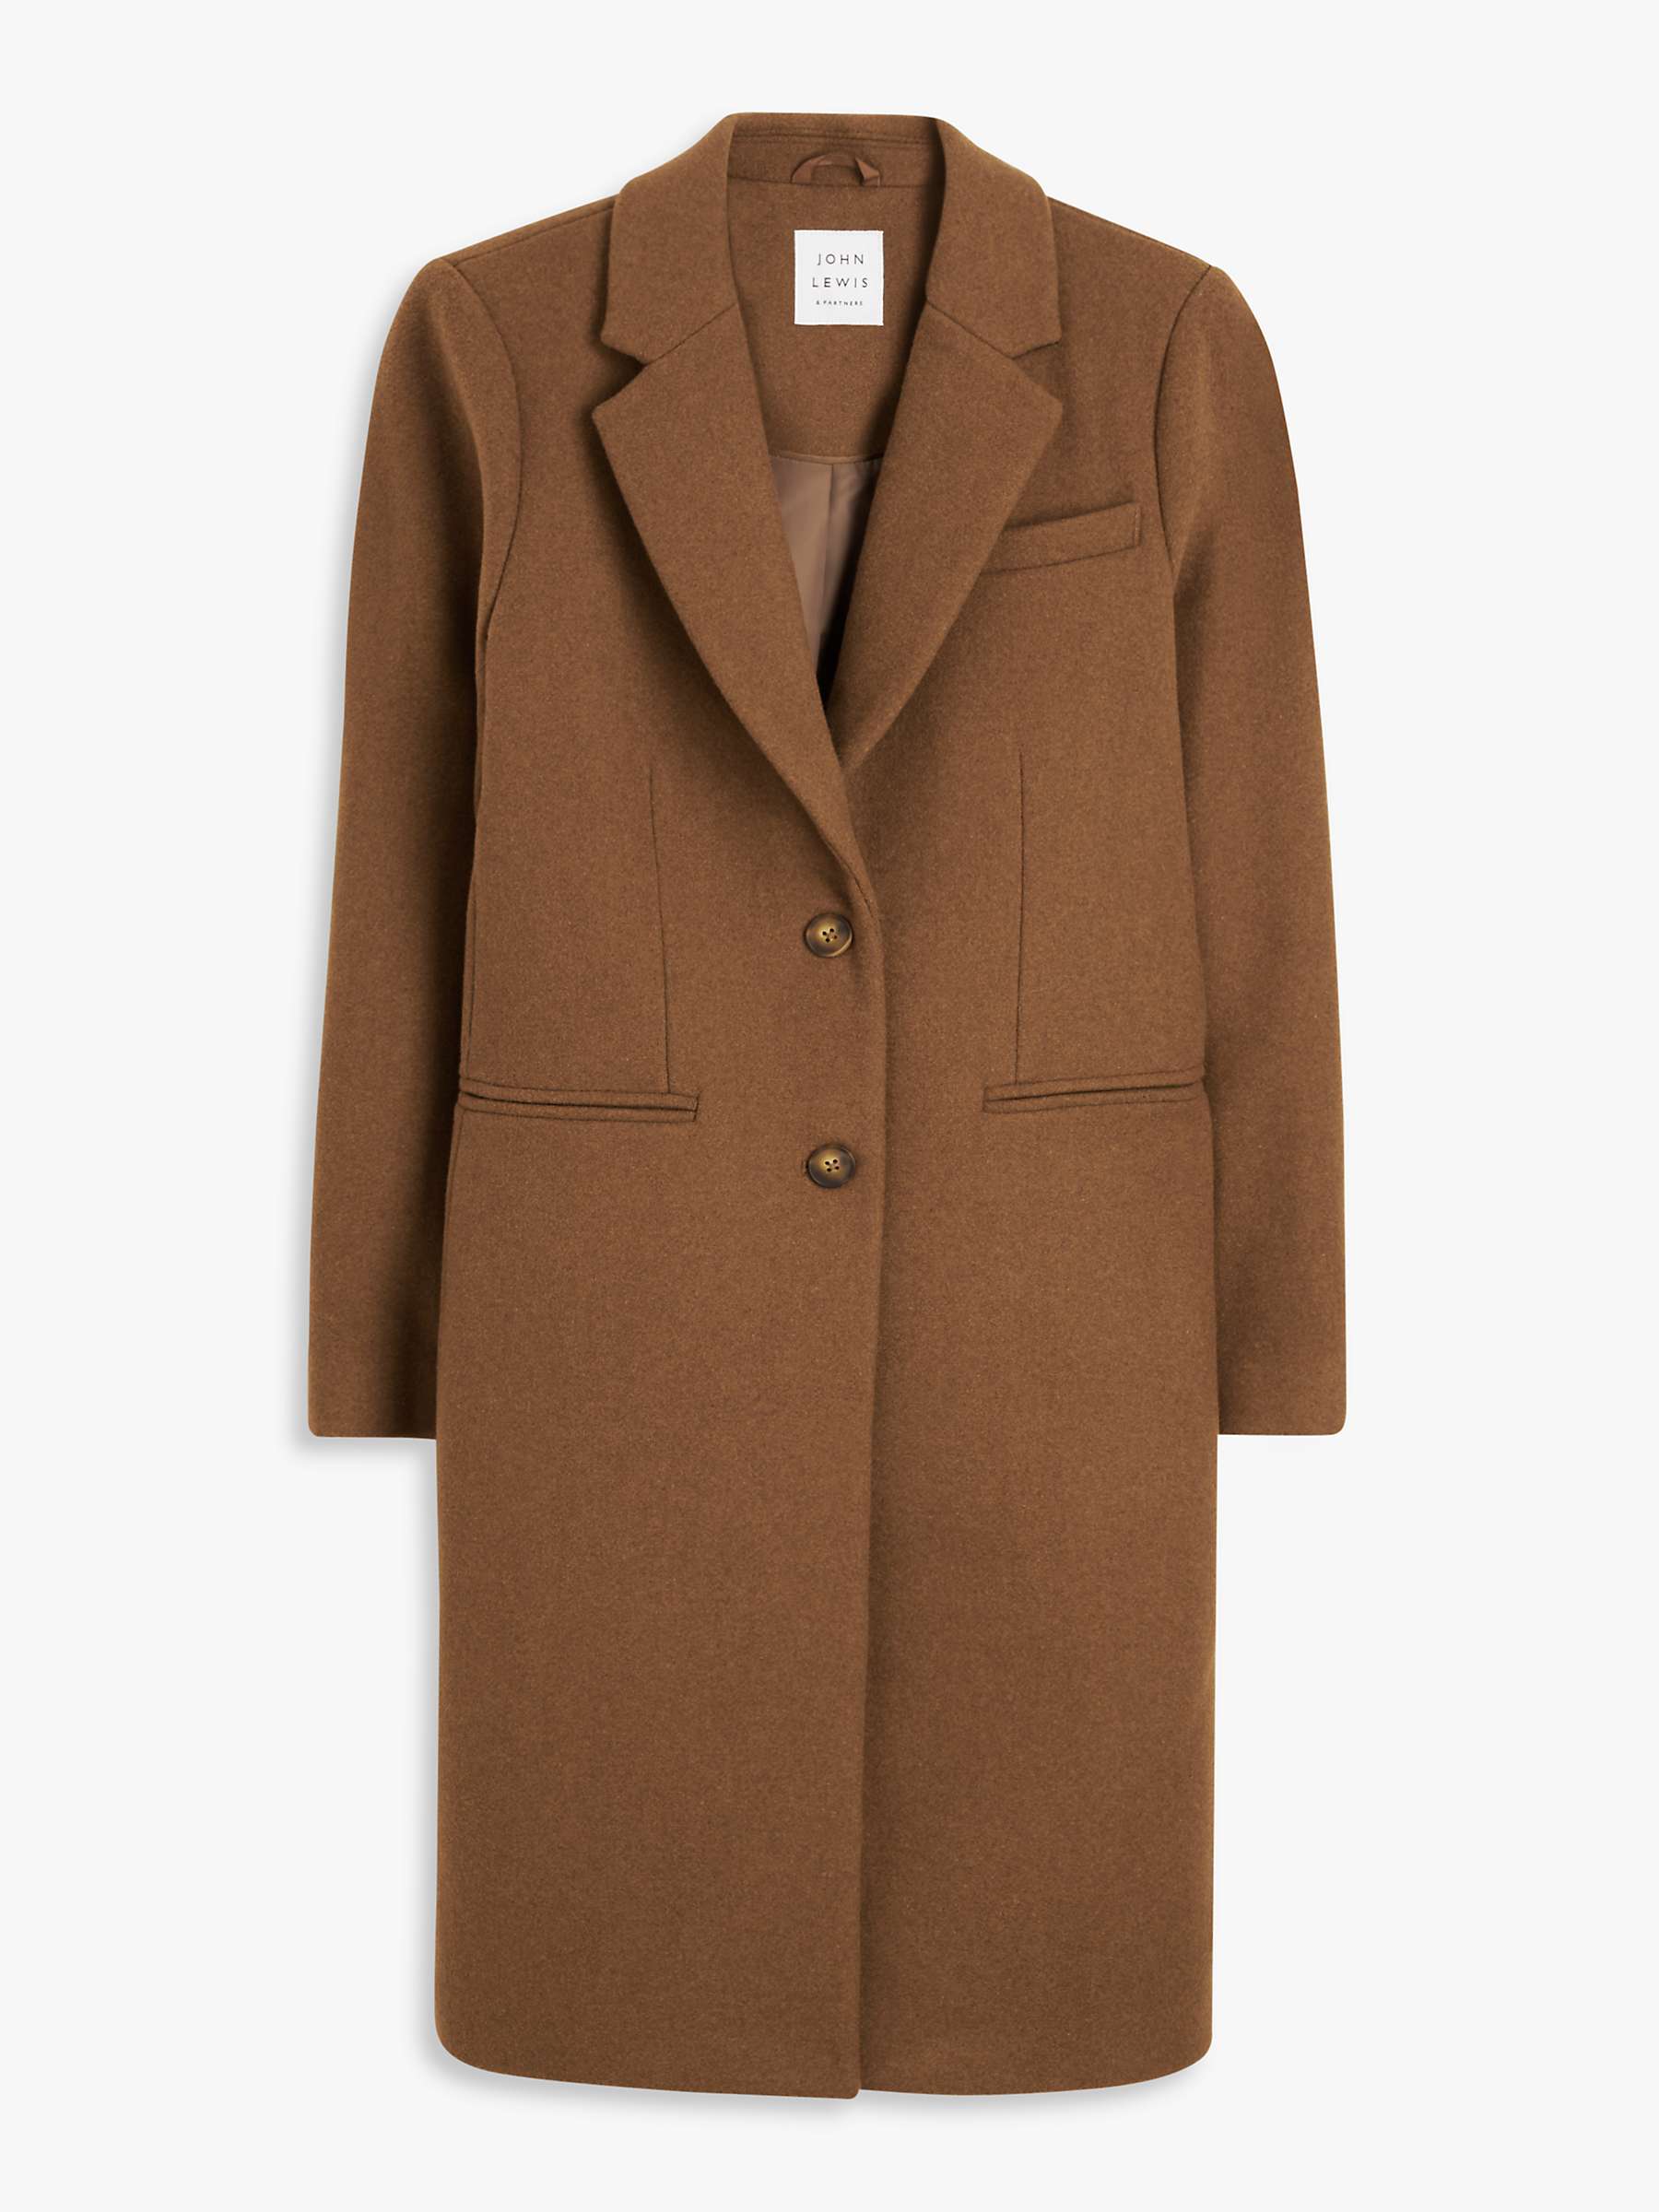 Buy John Lewis Wool Blend Crombie Overcoat Online at johnlewis.com